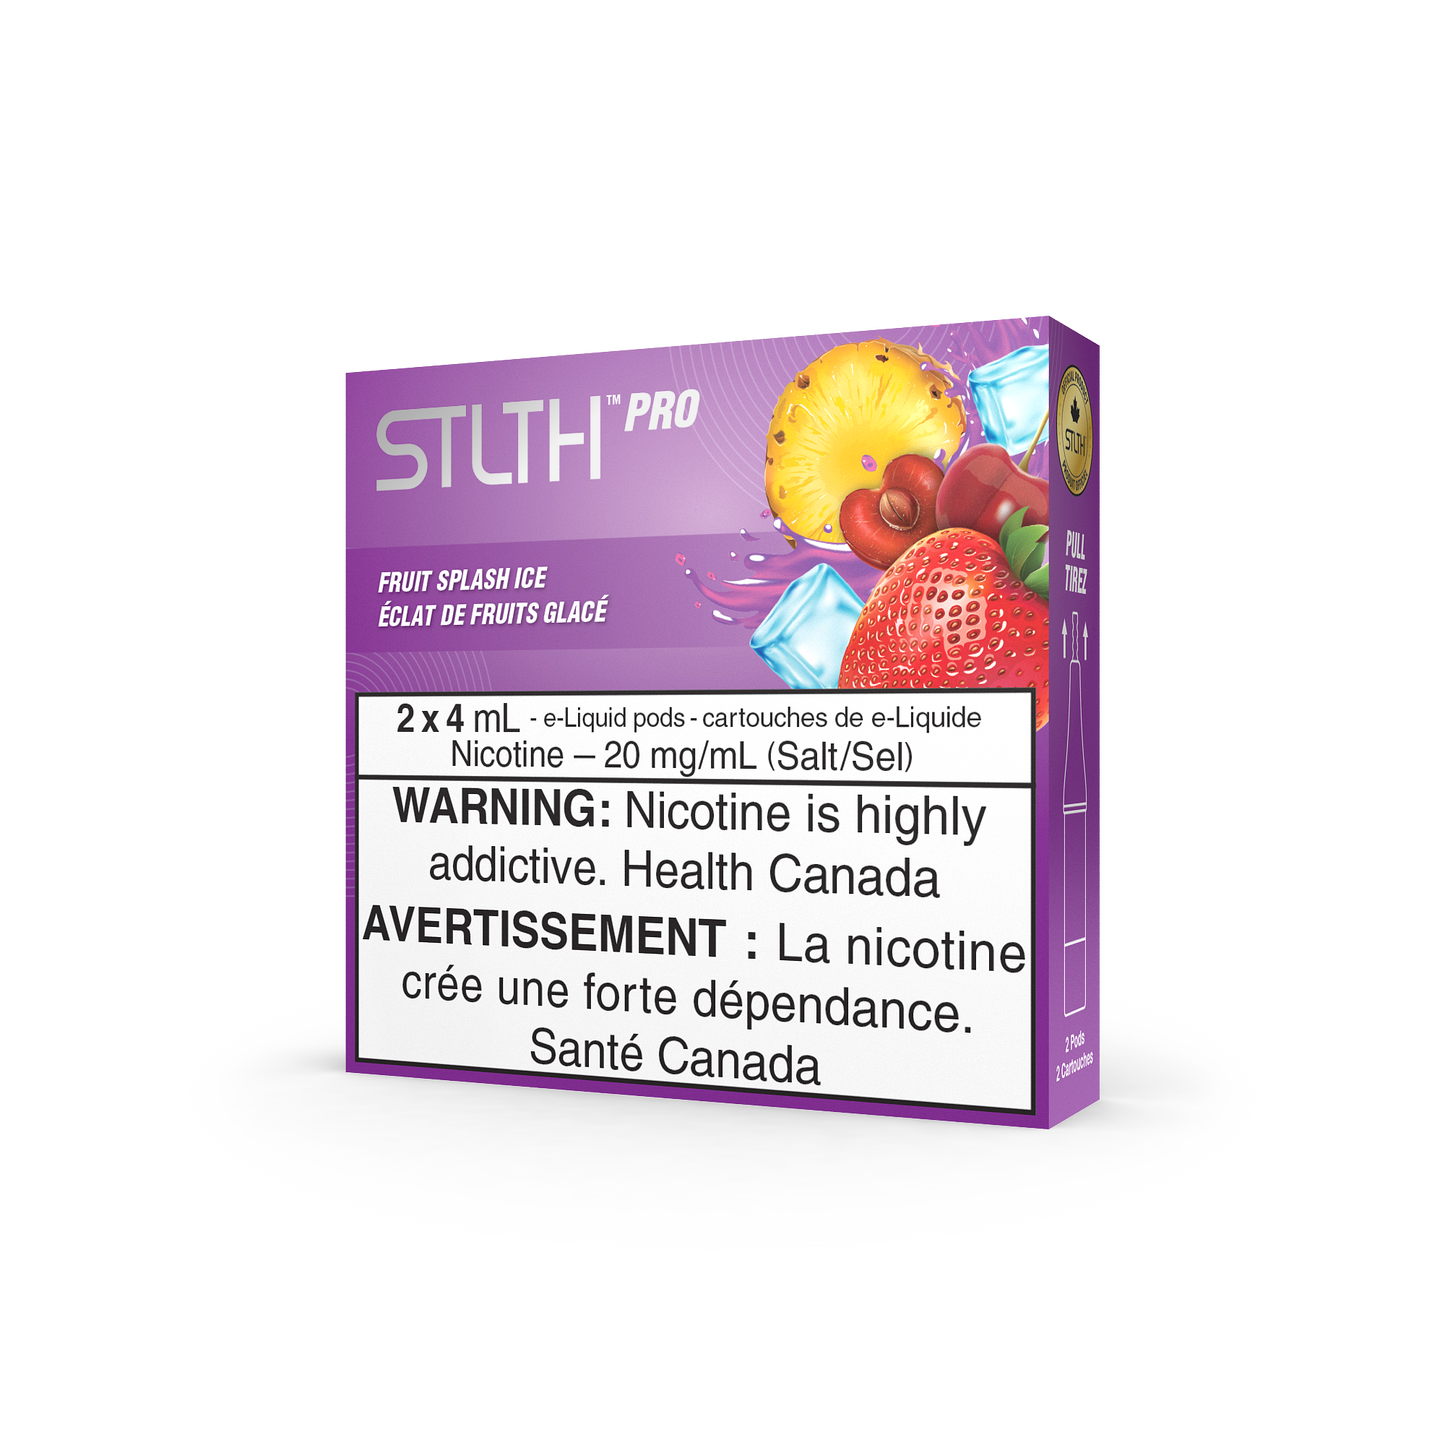 STLTH Pro - Fruit Splash Ice (Pack of 5)